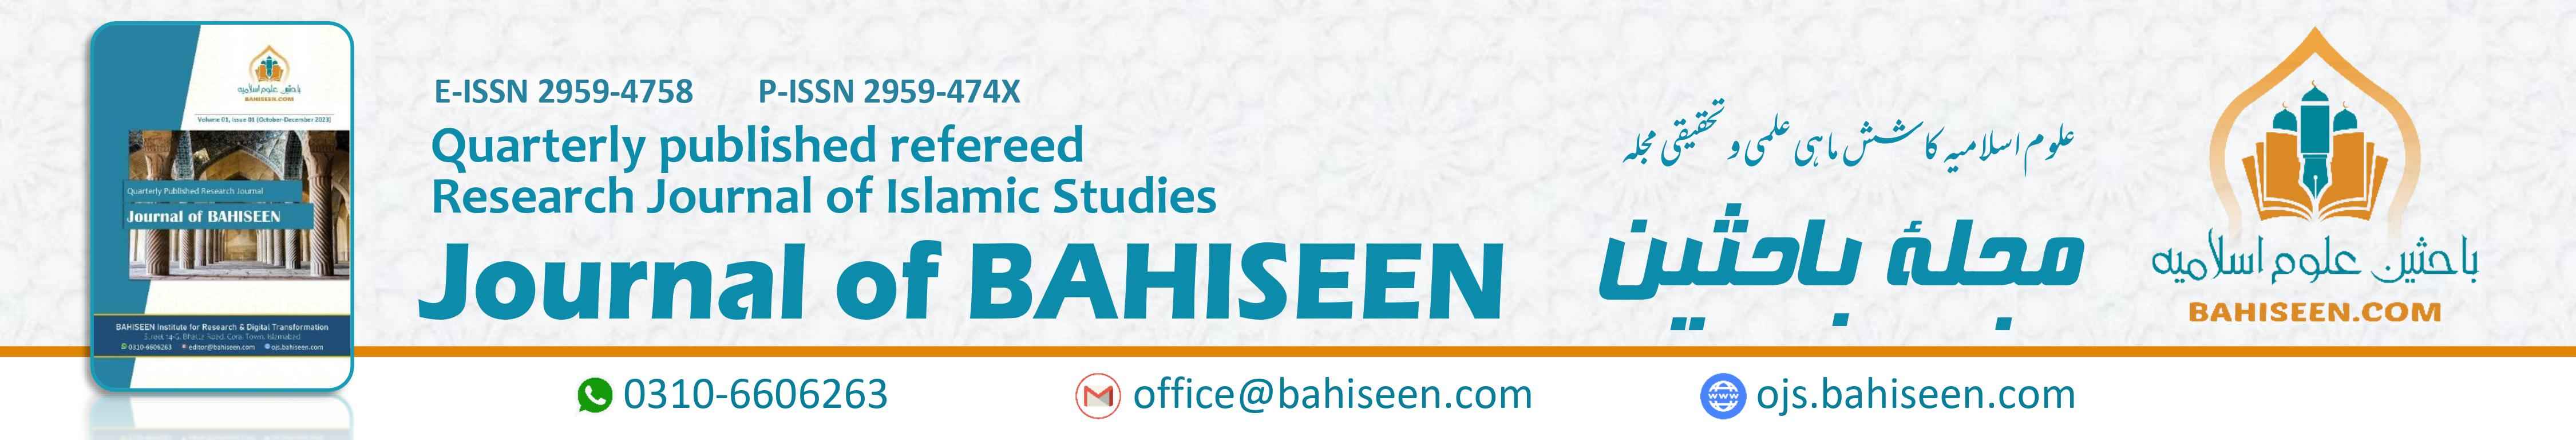 Journal of BAHISEEN